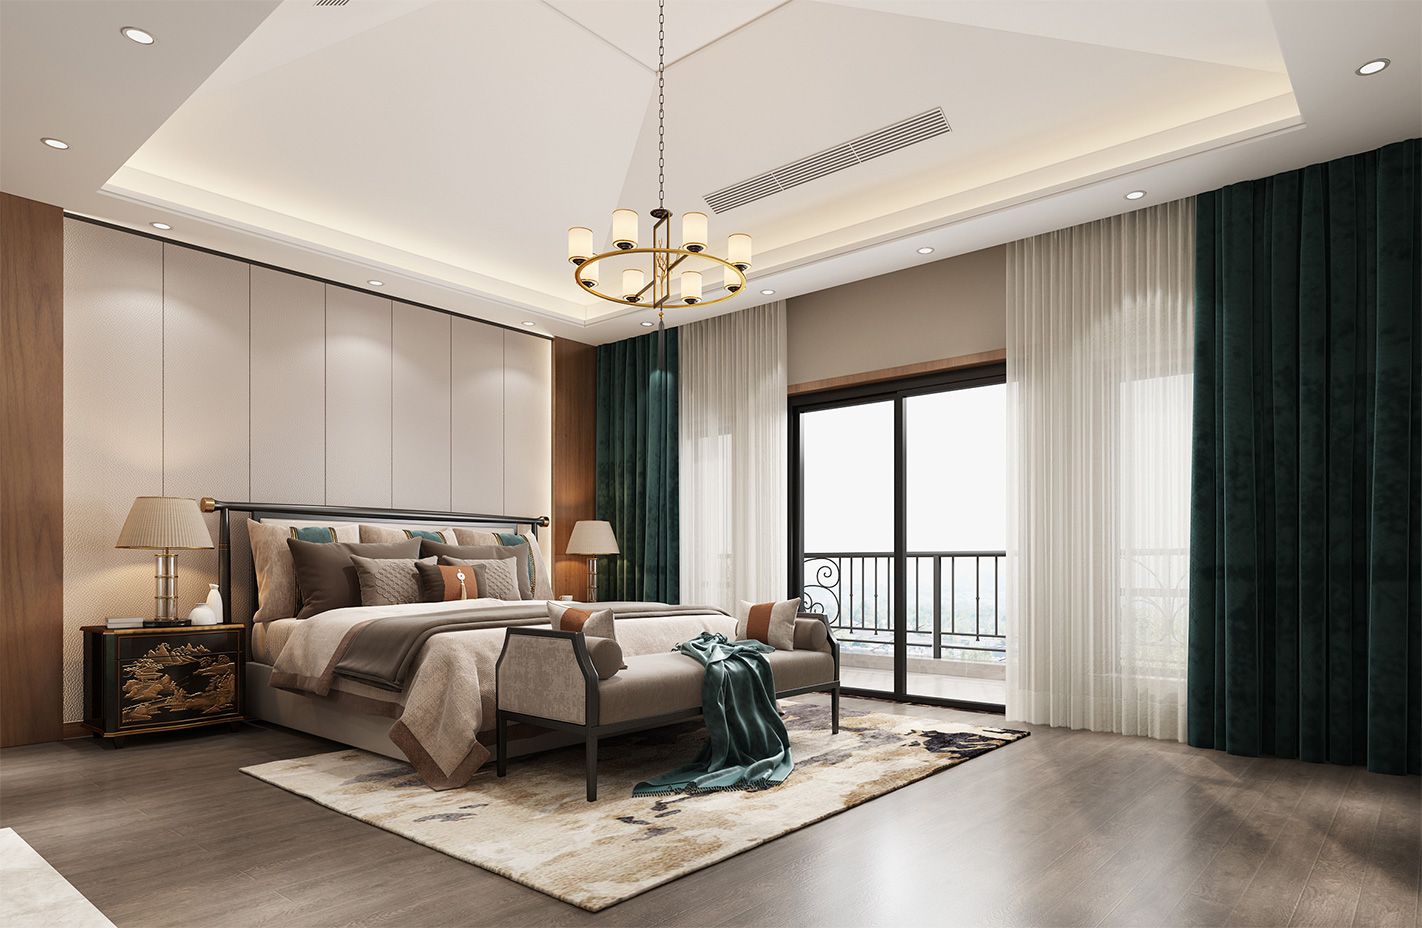 杨浦区上海院子600平新中式风格独栋别墅卧室装修效果图